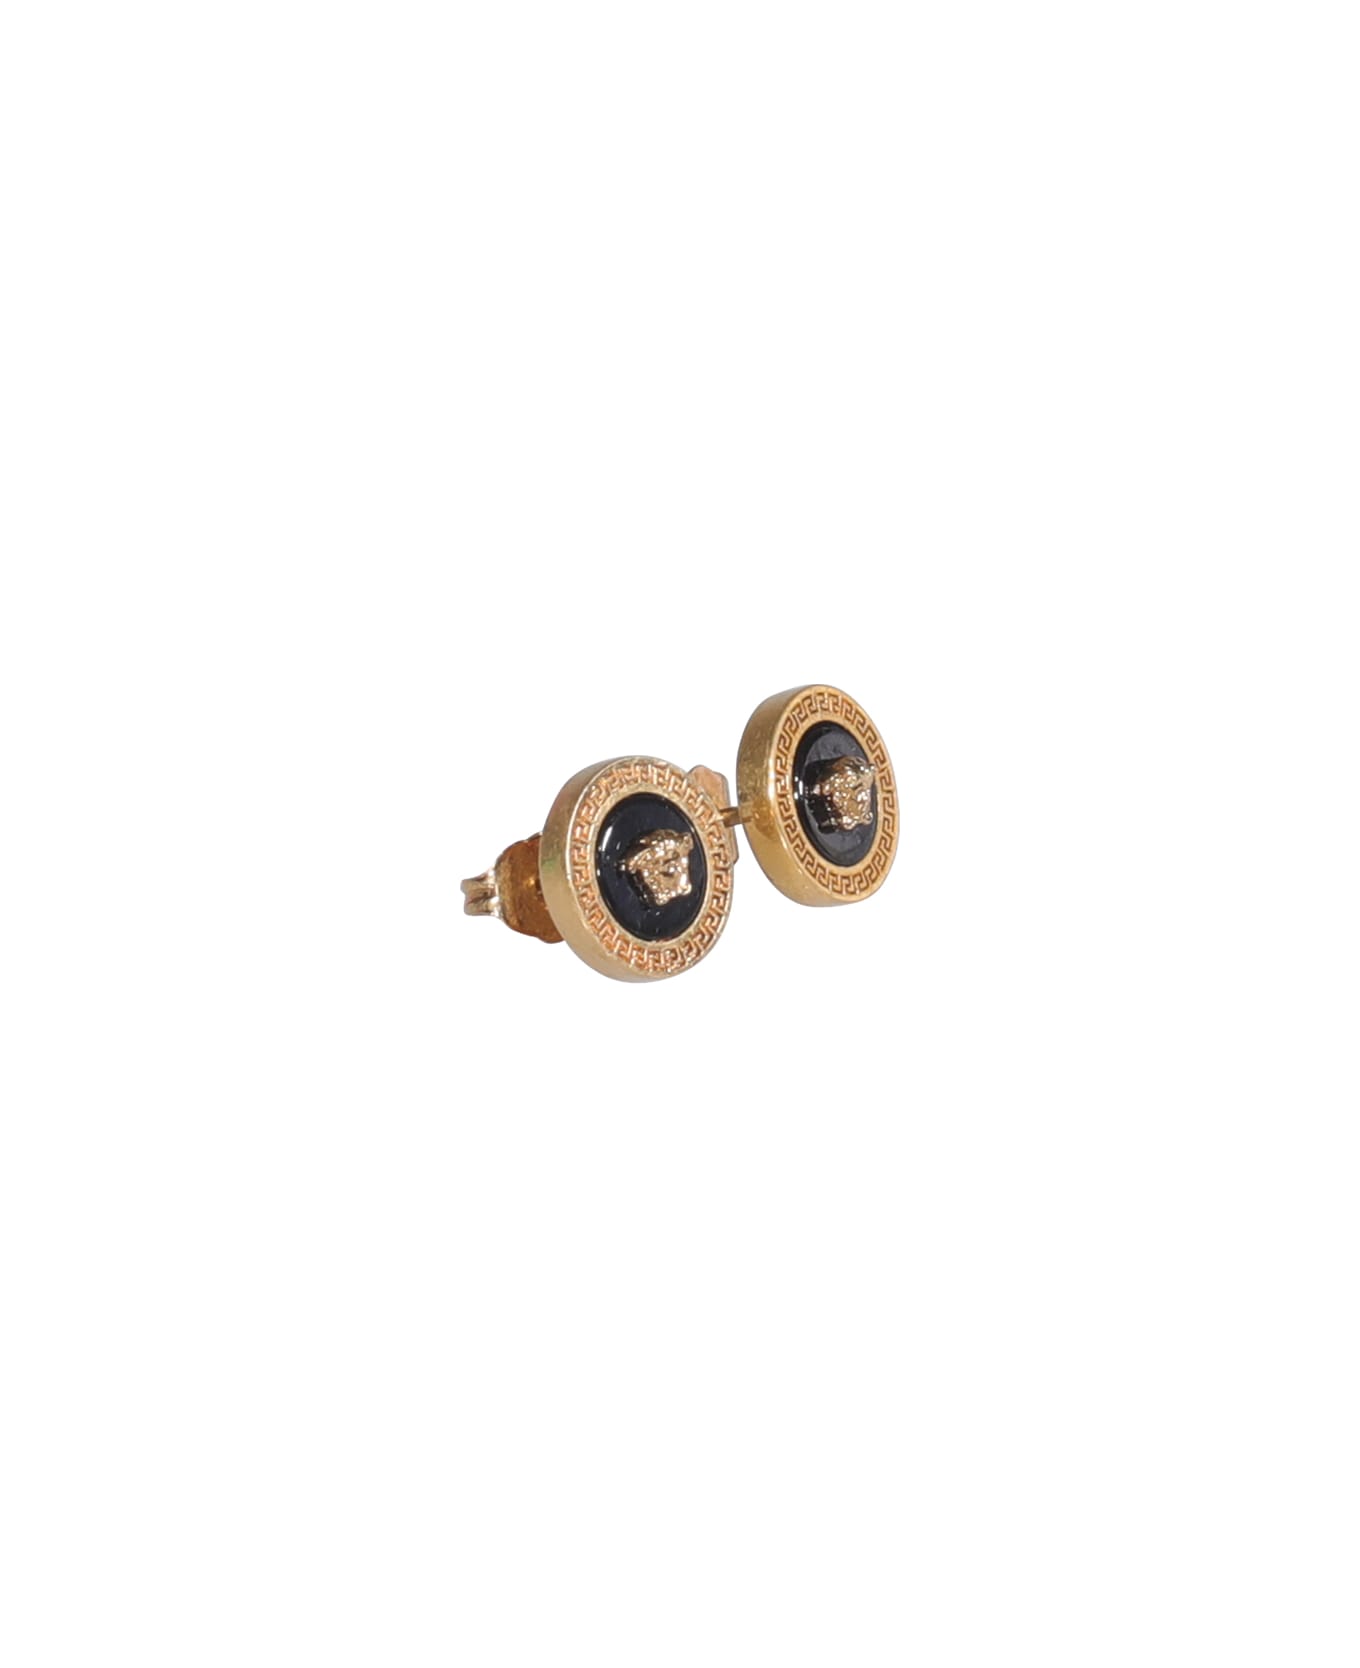 Versace Medusa Enameled Stud Earrings - GOLD